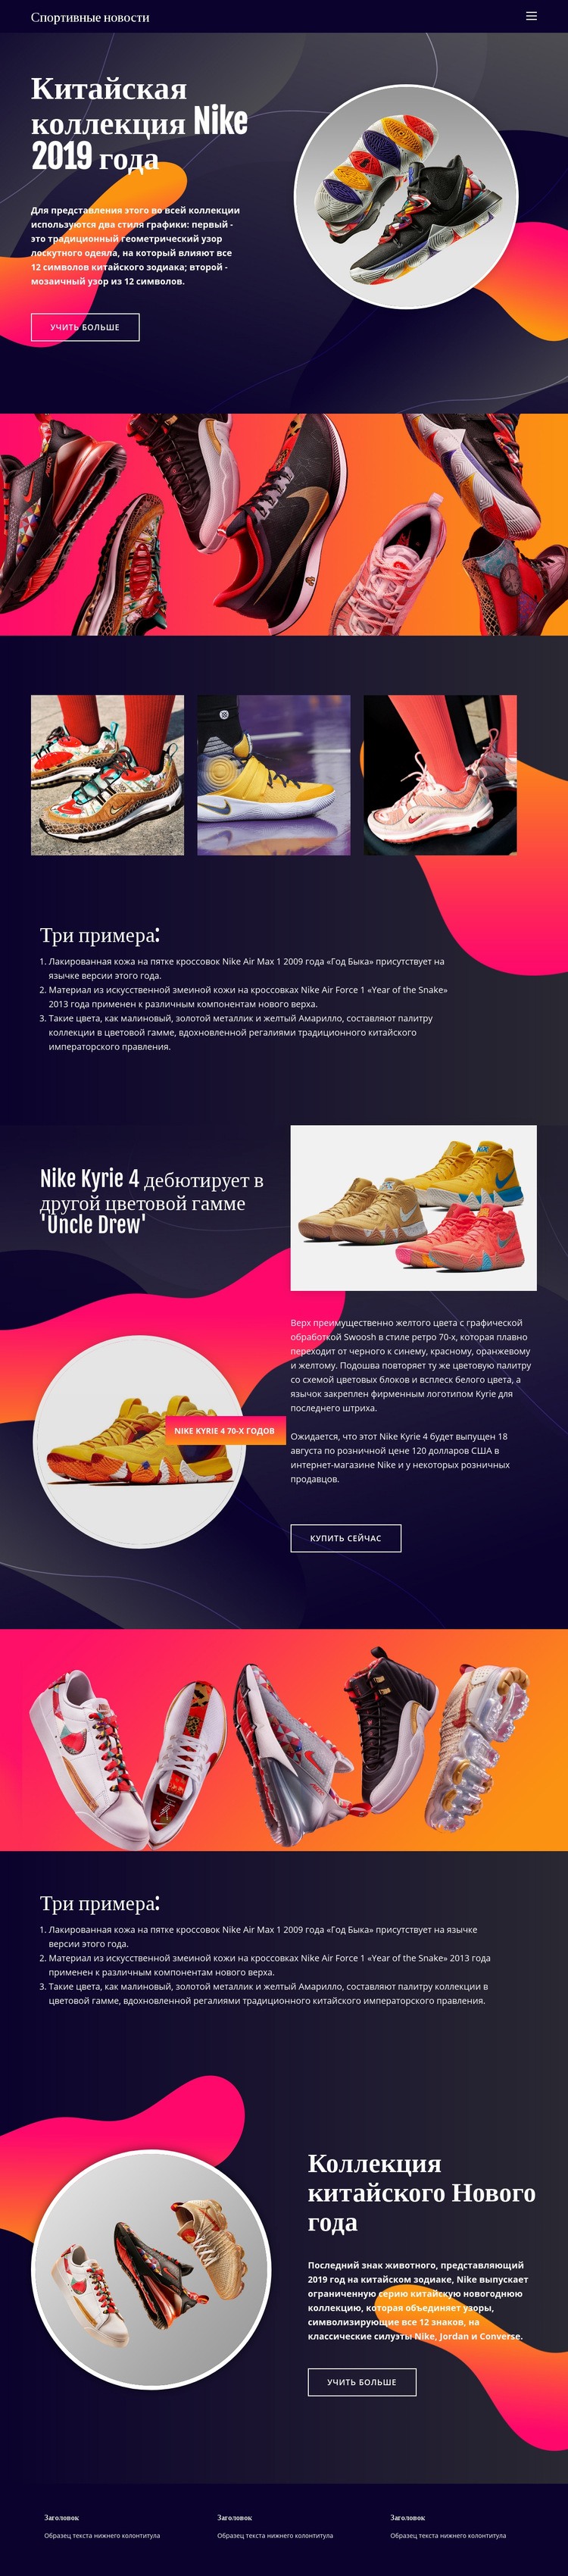 Коллекция Nike Мокап веб-сайта